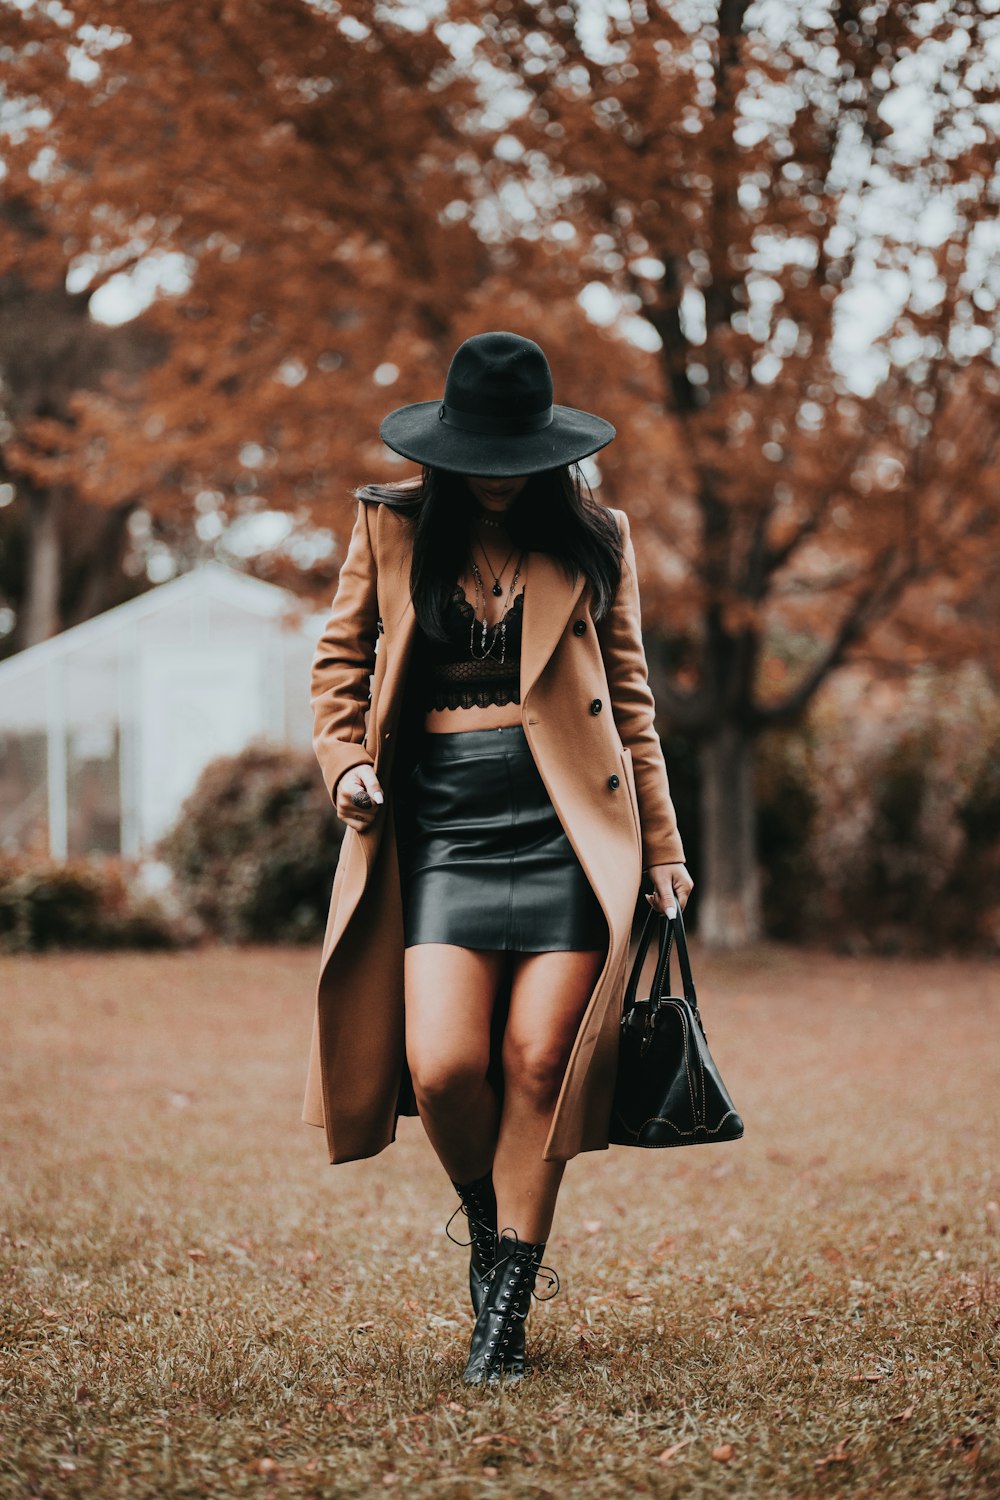 femme en manteau marron et jupe noire portant un chapeau noir debout sur le champ d’herbe brune pendant